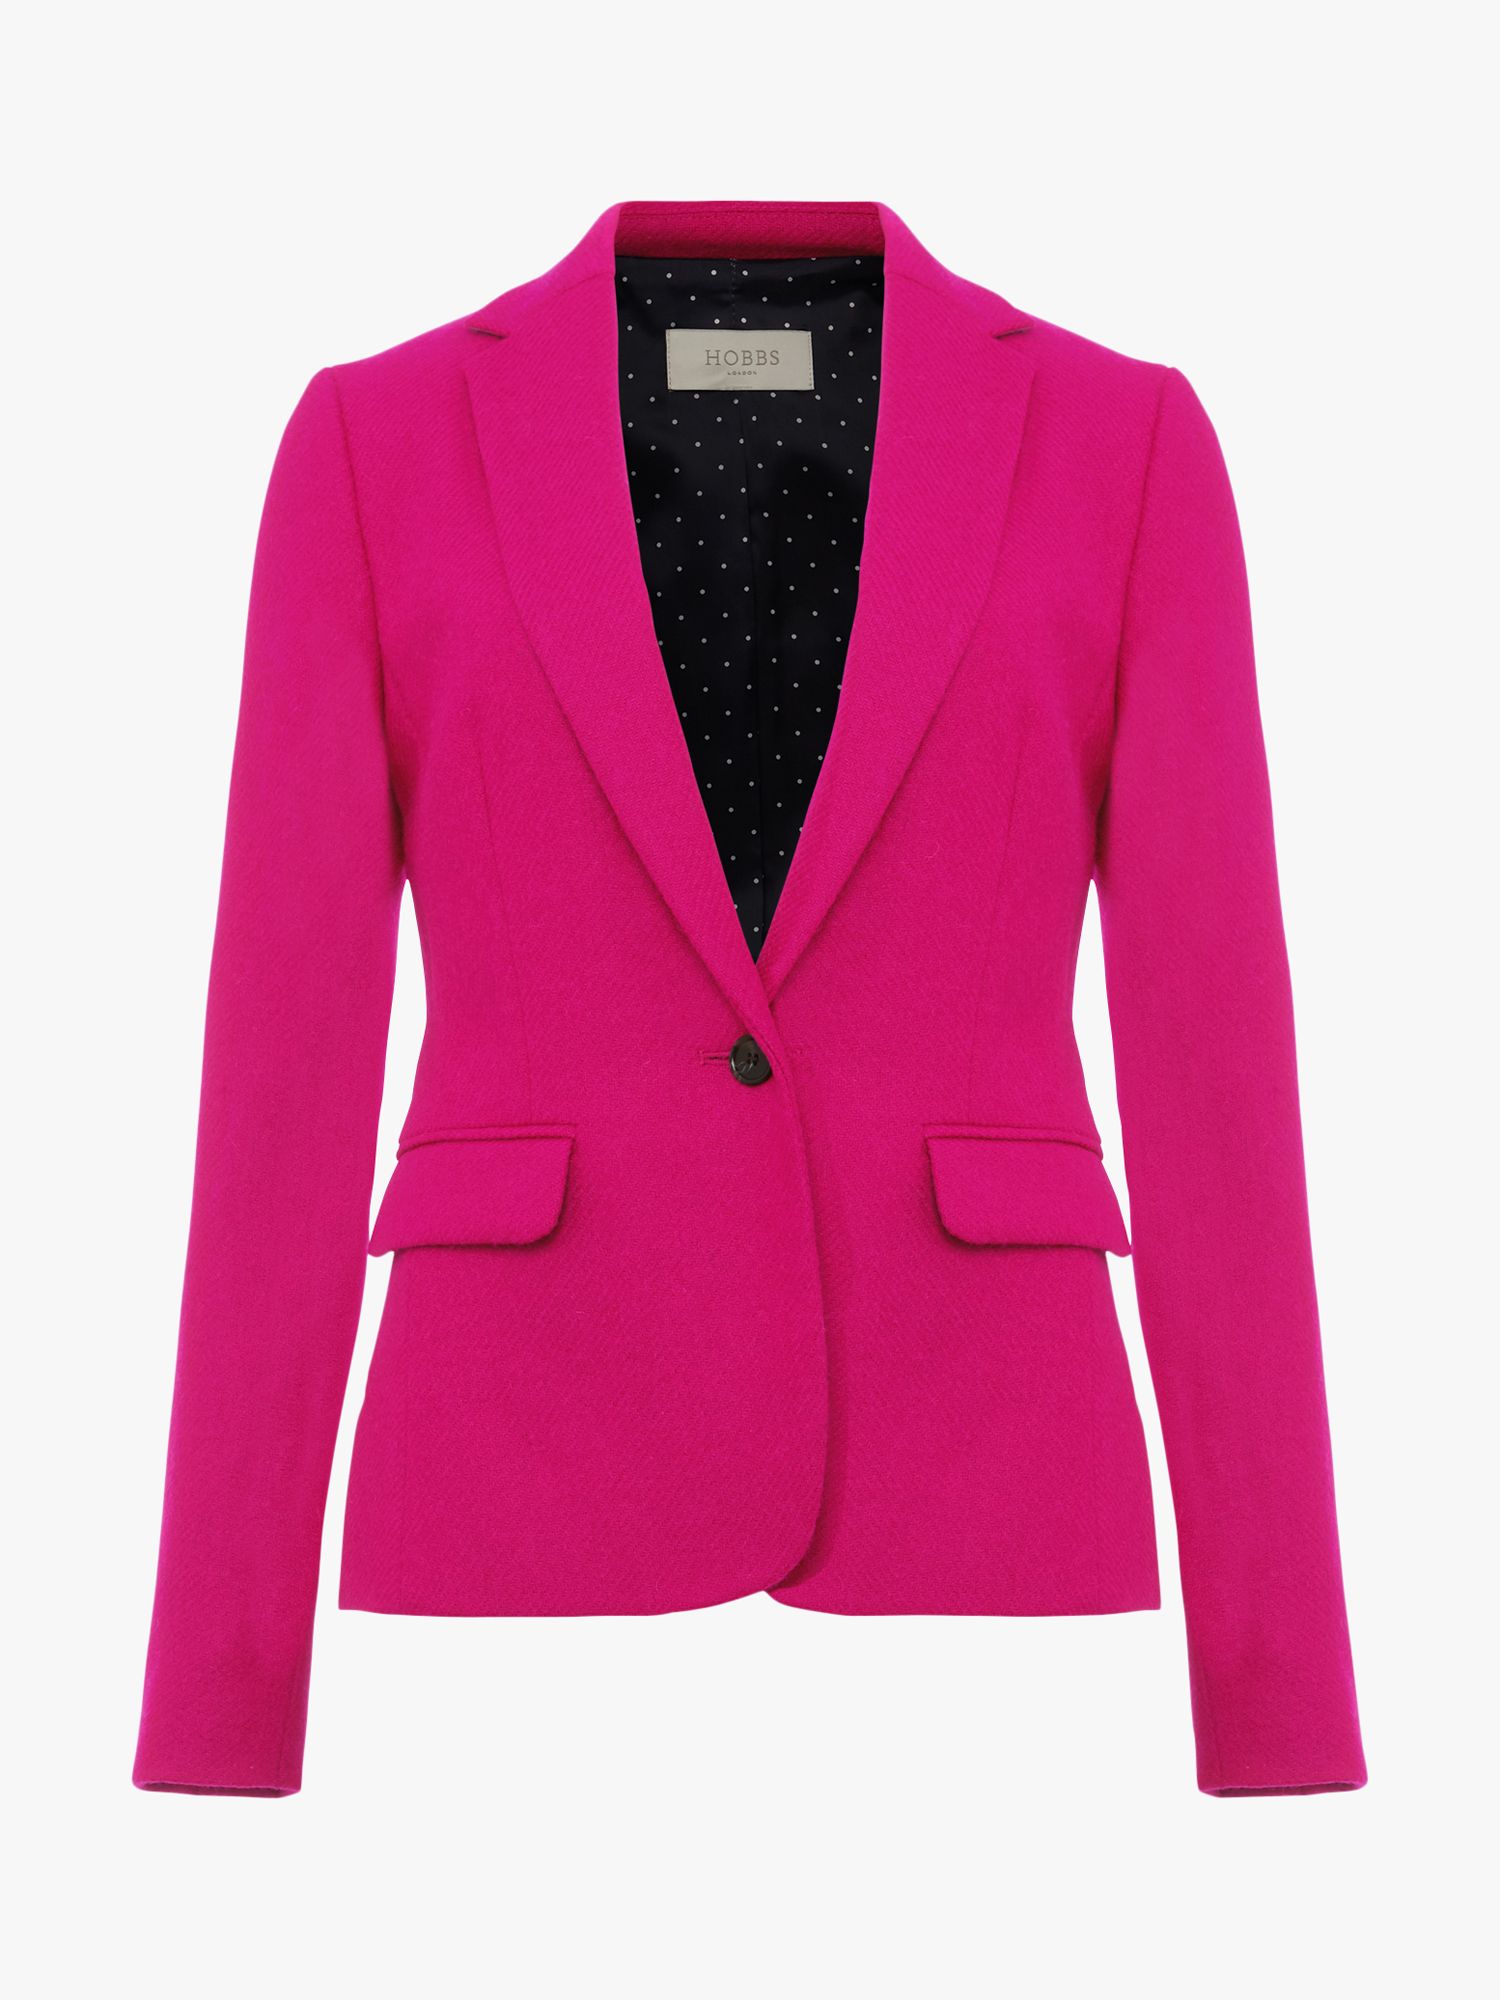 Hobbs Petite Blake Wool Jacket, Bright Pink at John Lewis & Partners